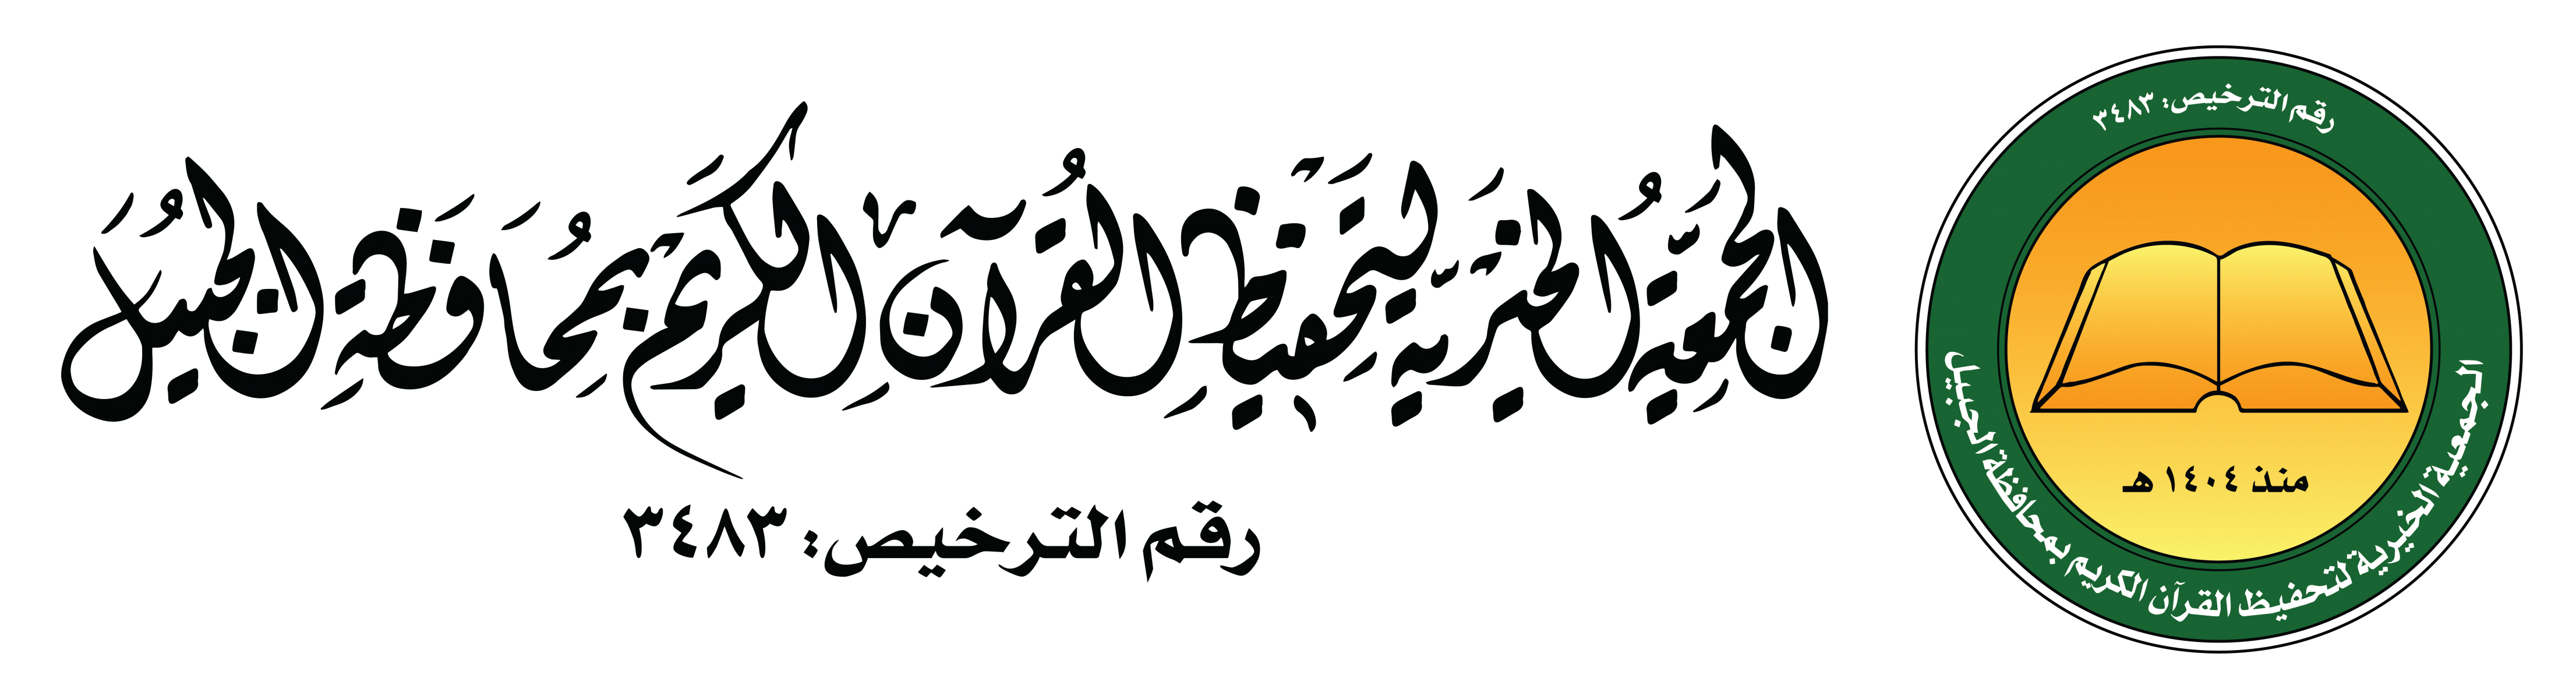  الجمعية الخيرية لتحفيظ القرآن الكريم بالجبيل